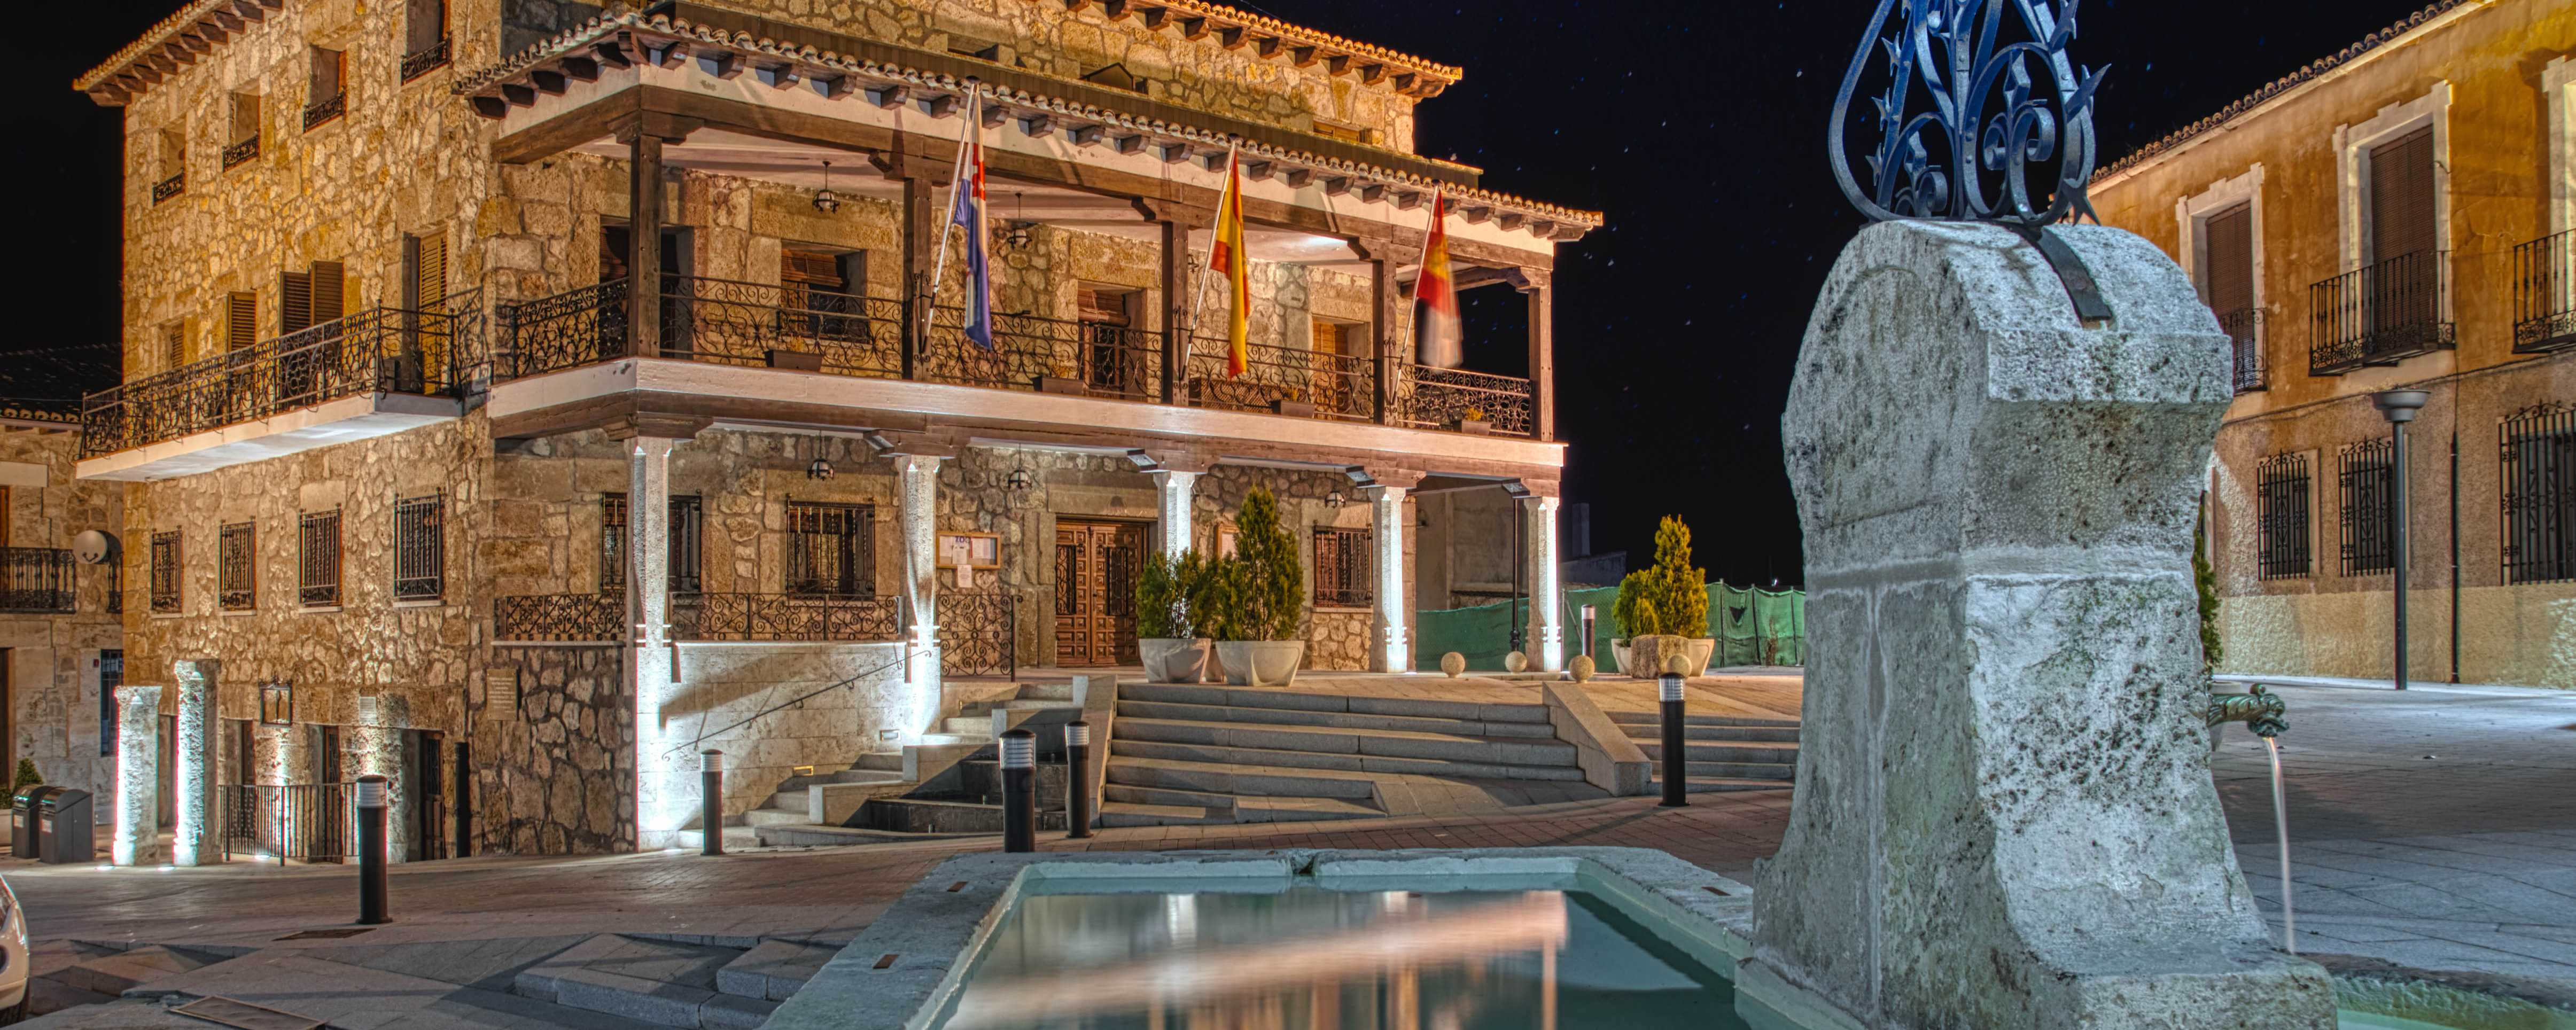 El ayuntamiento de Almonacid convoca un Concurso de fotografía para confeccionar su calendario 2022